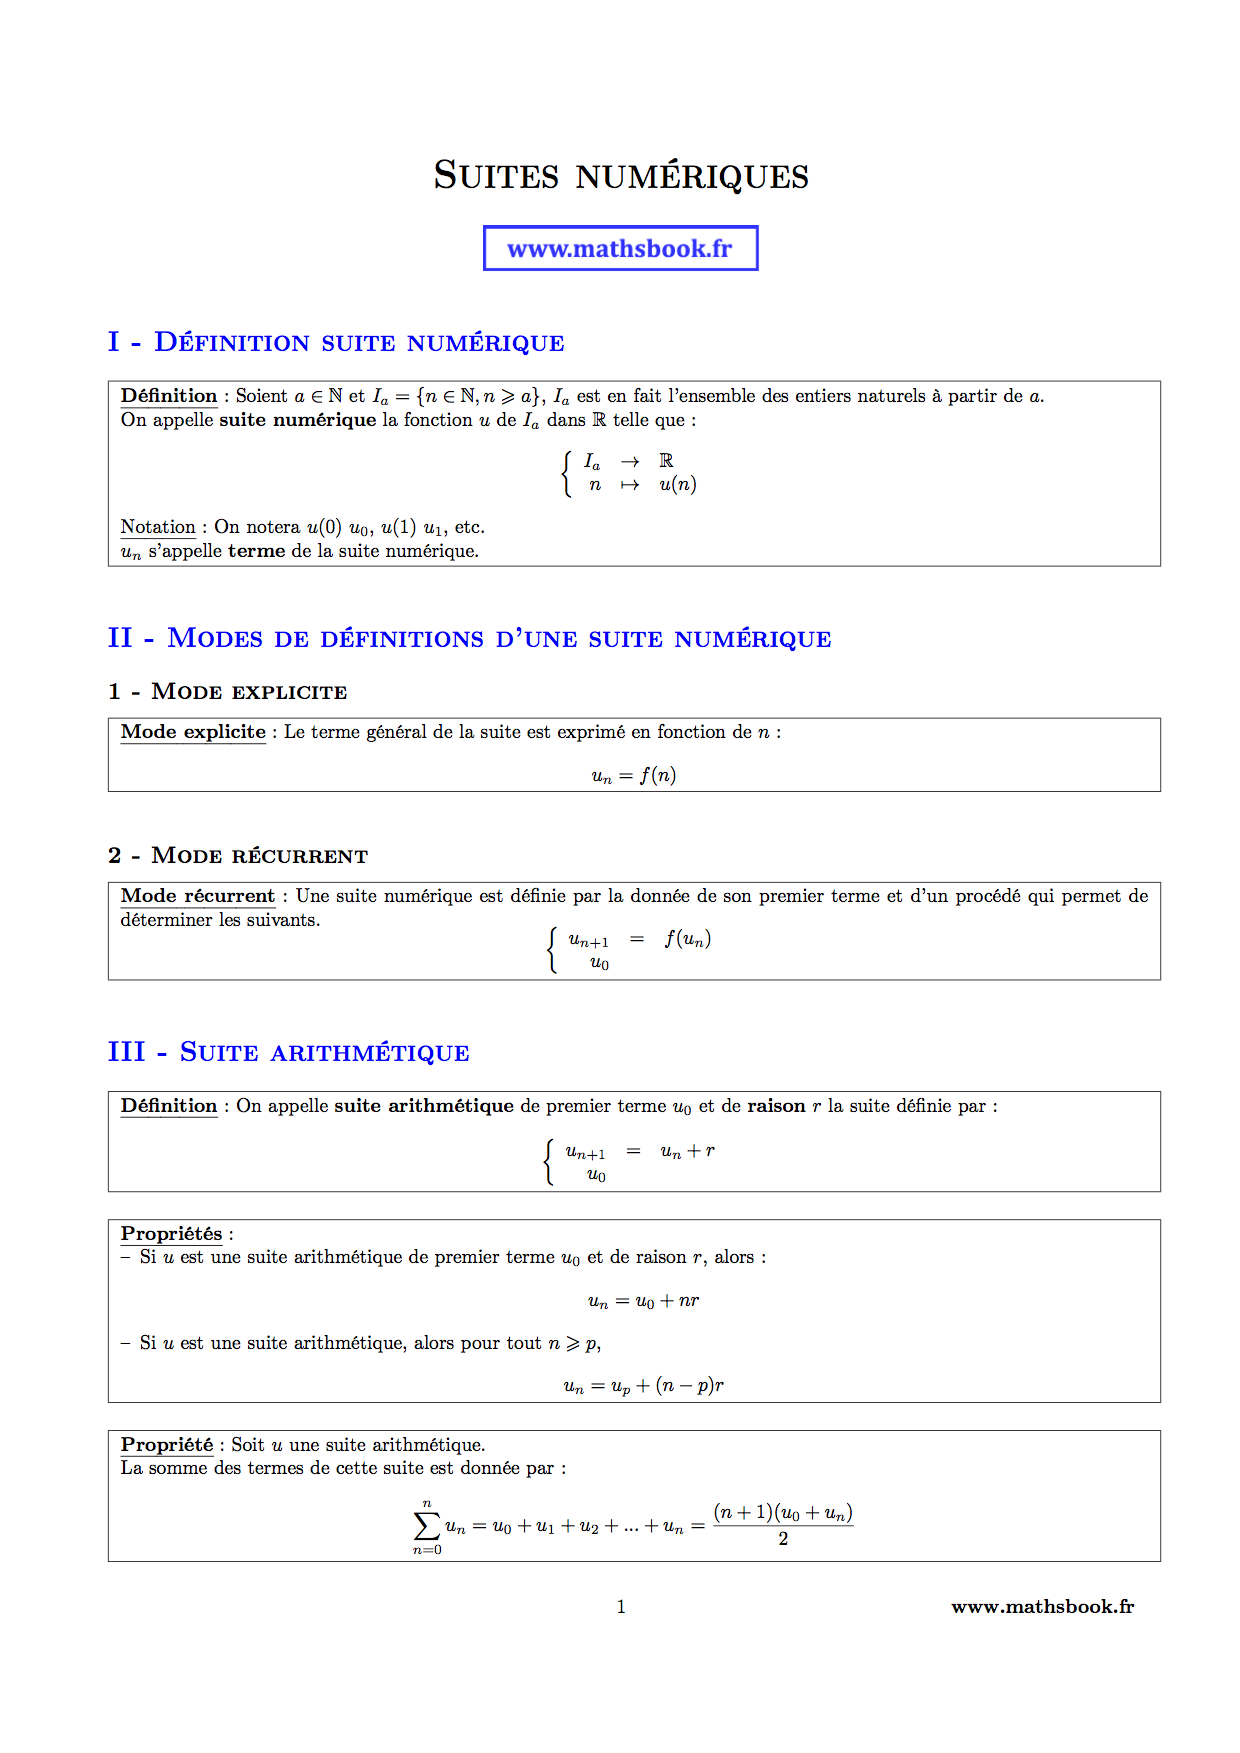 suite definition suite arithmetique